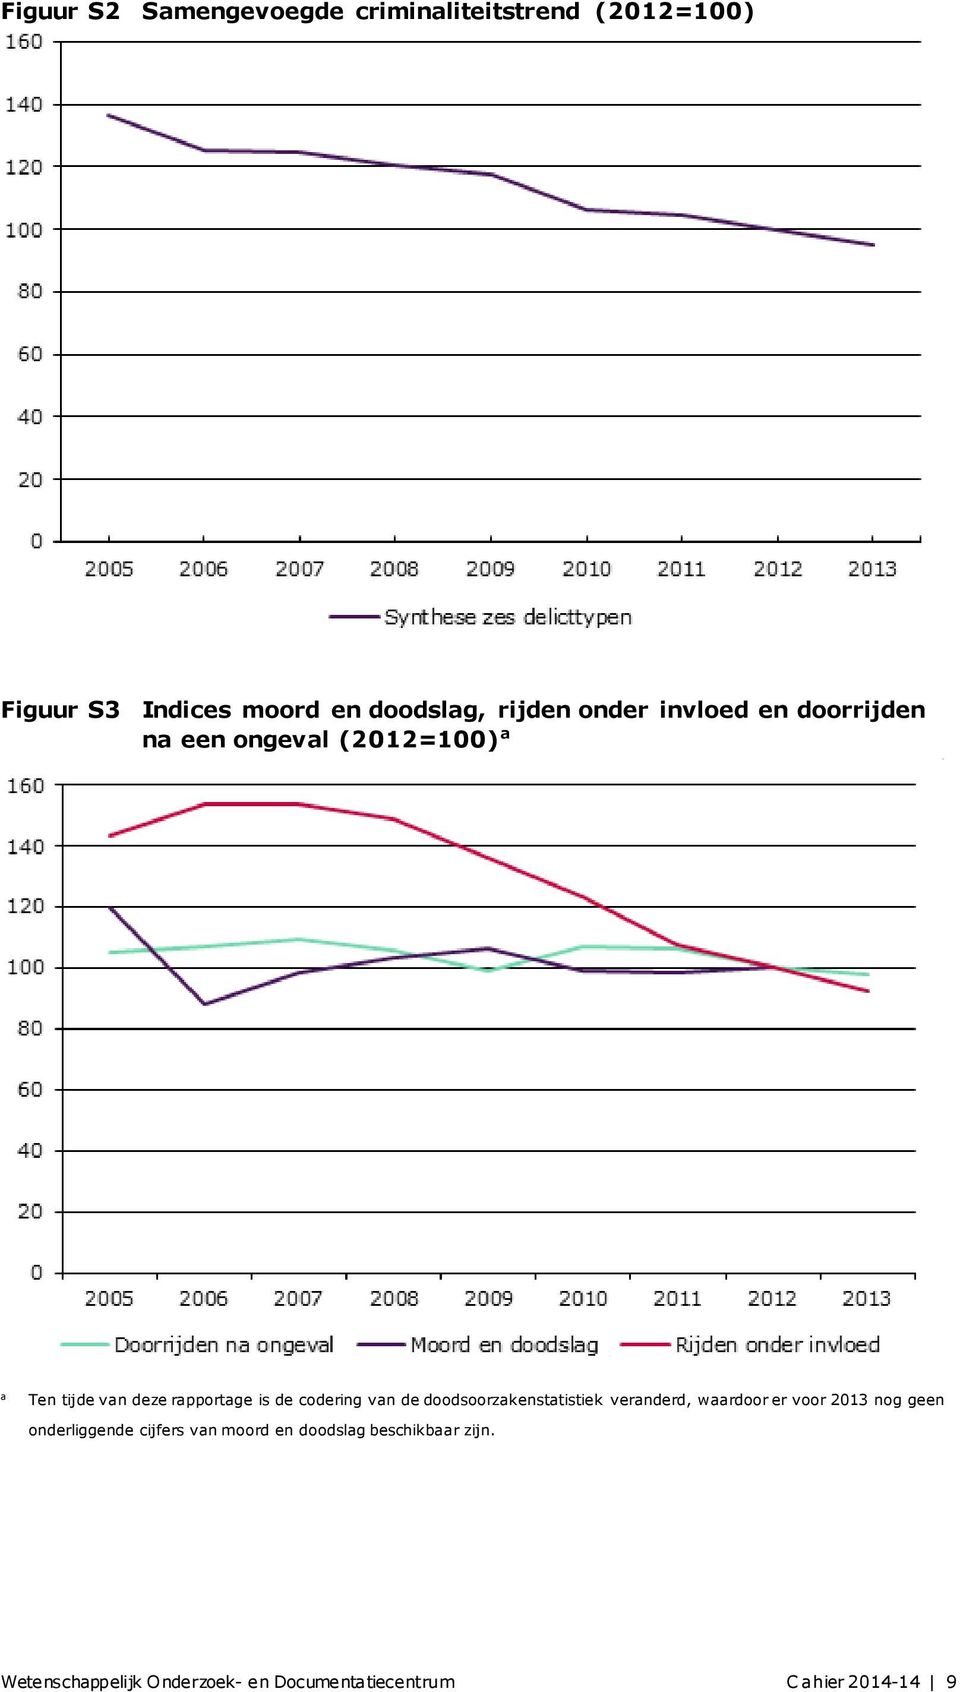 codering van de doodsoorzakenstatistiek veranderd, waardoor er voor 2013 nog geen onderliggende